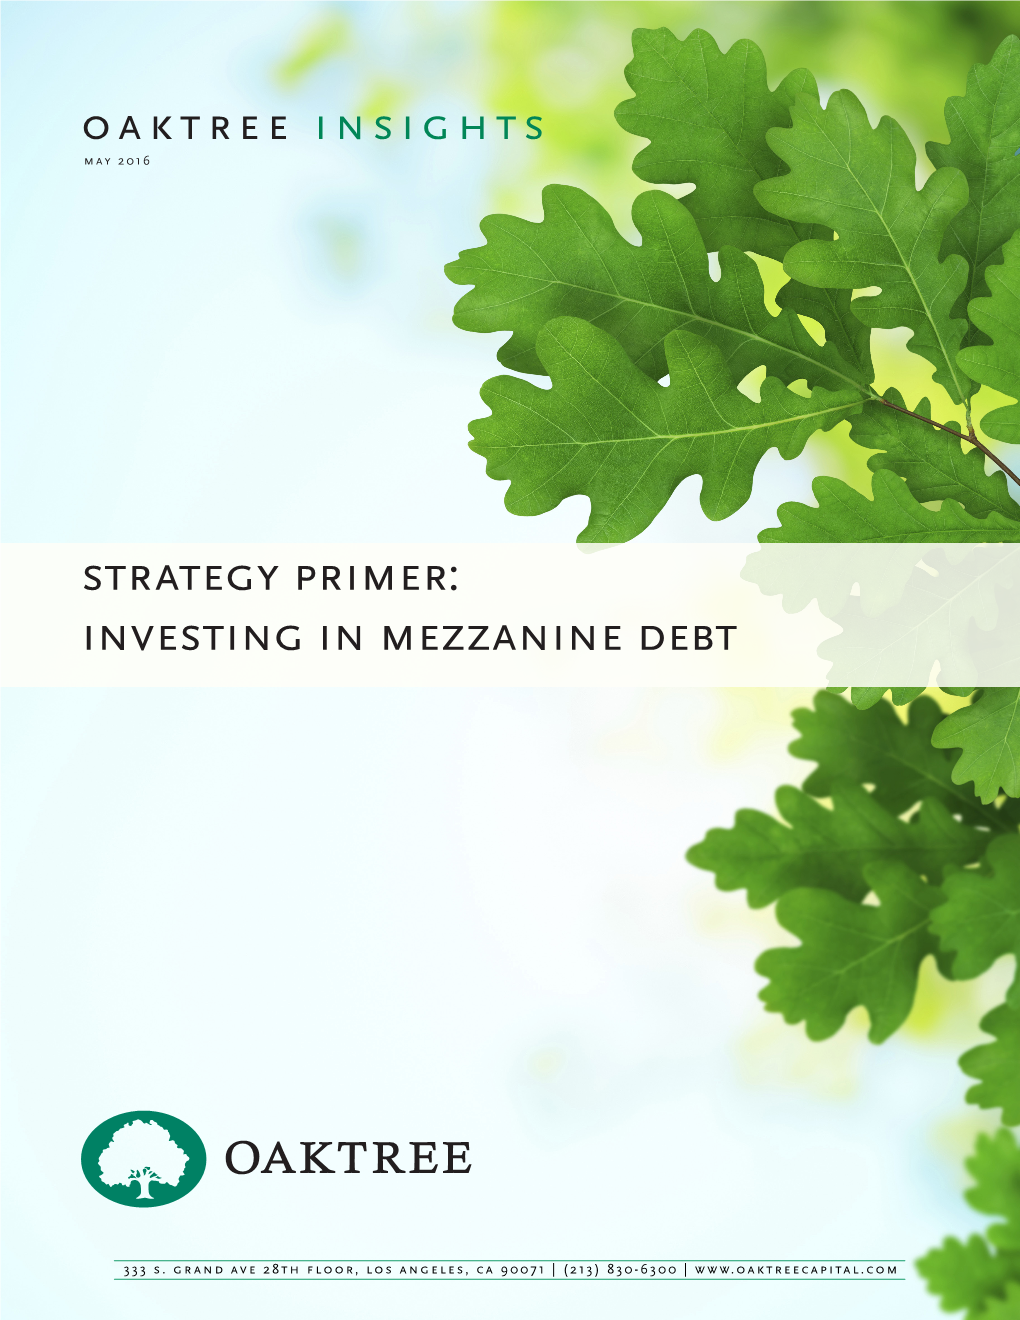 Strategy Primer: Investing in Mezzanine Debt